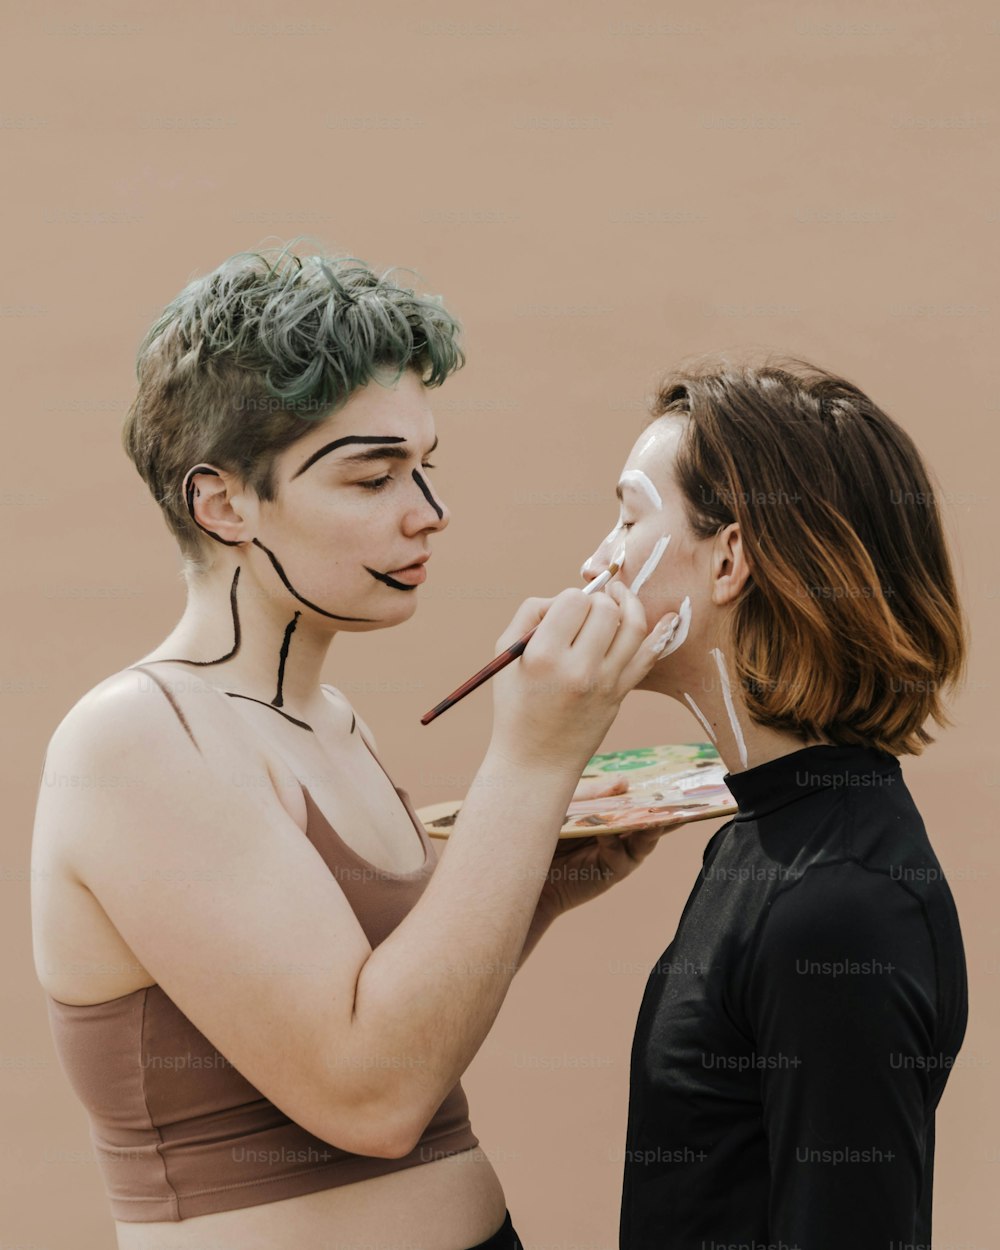 Una mujer está pintando la cara de otra mujer con pintura blanca